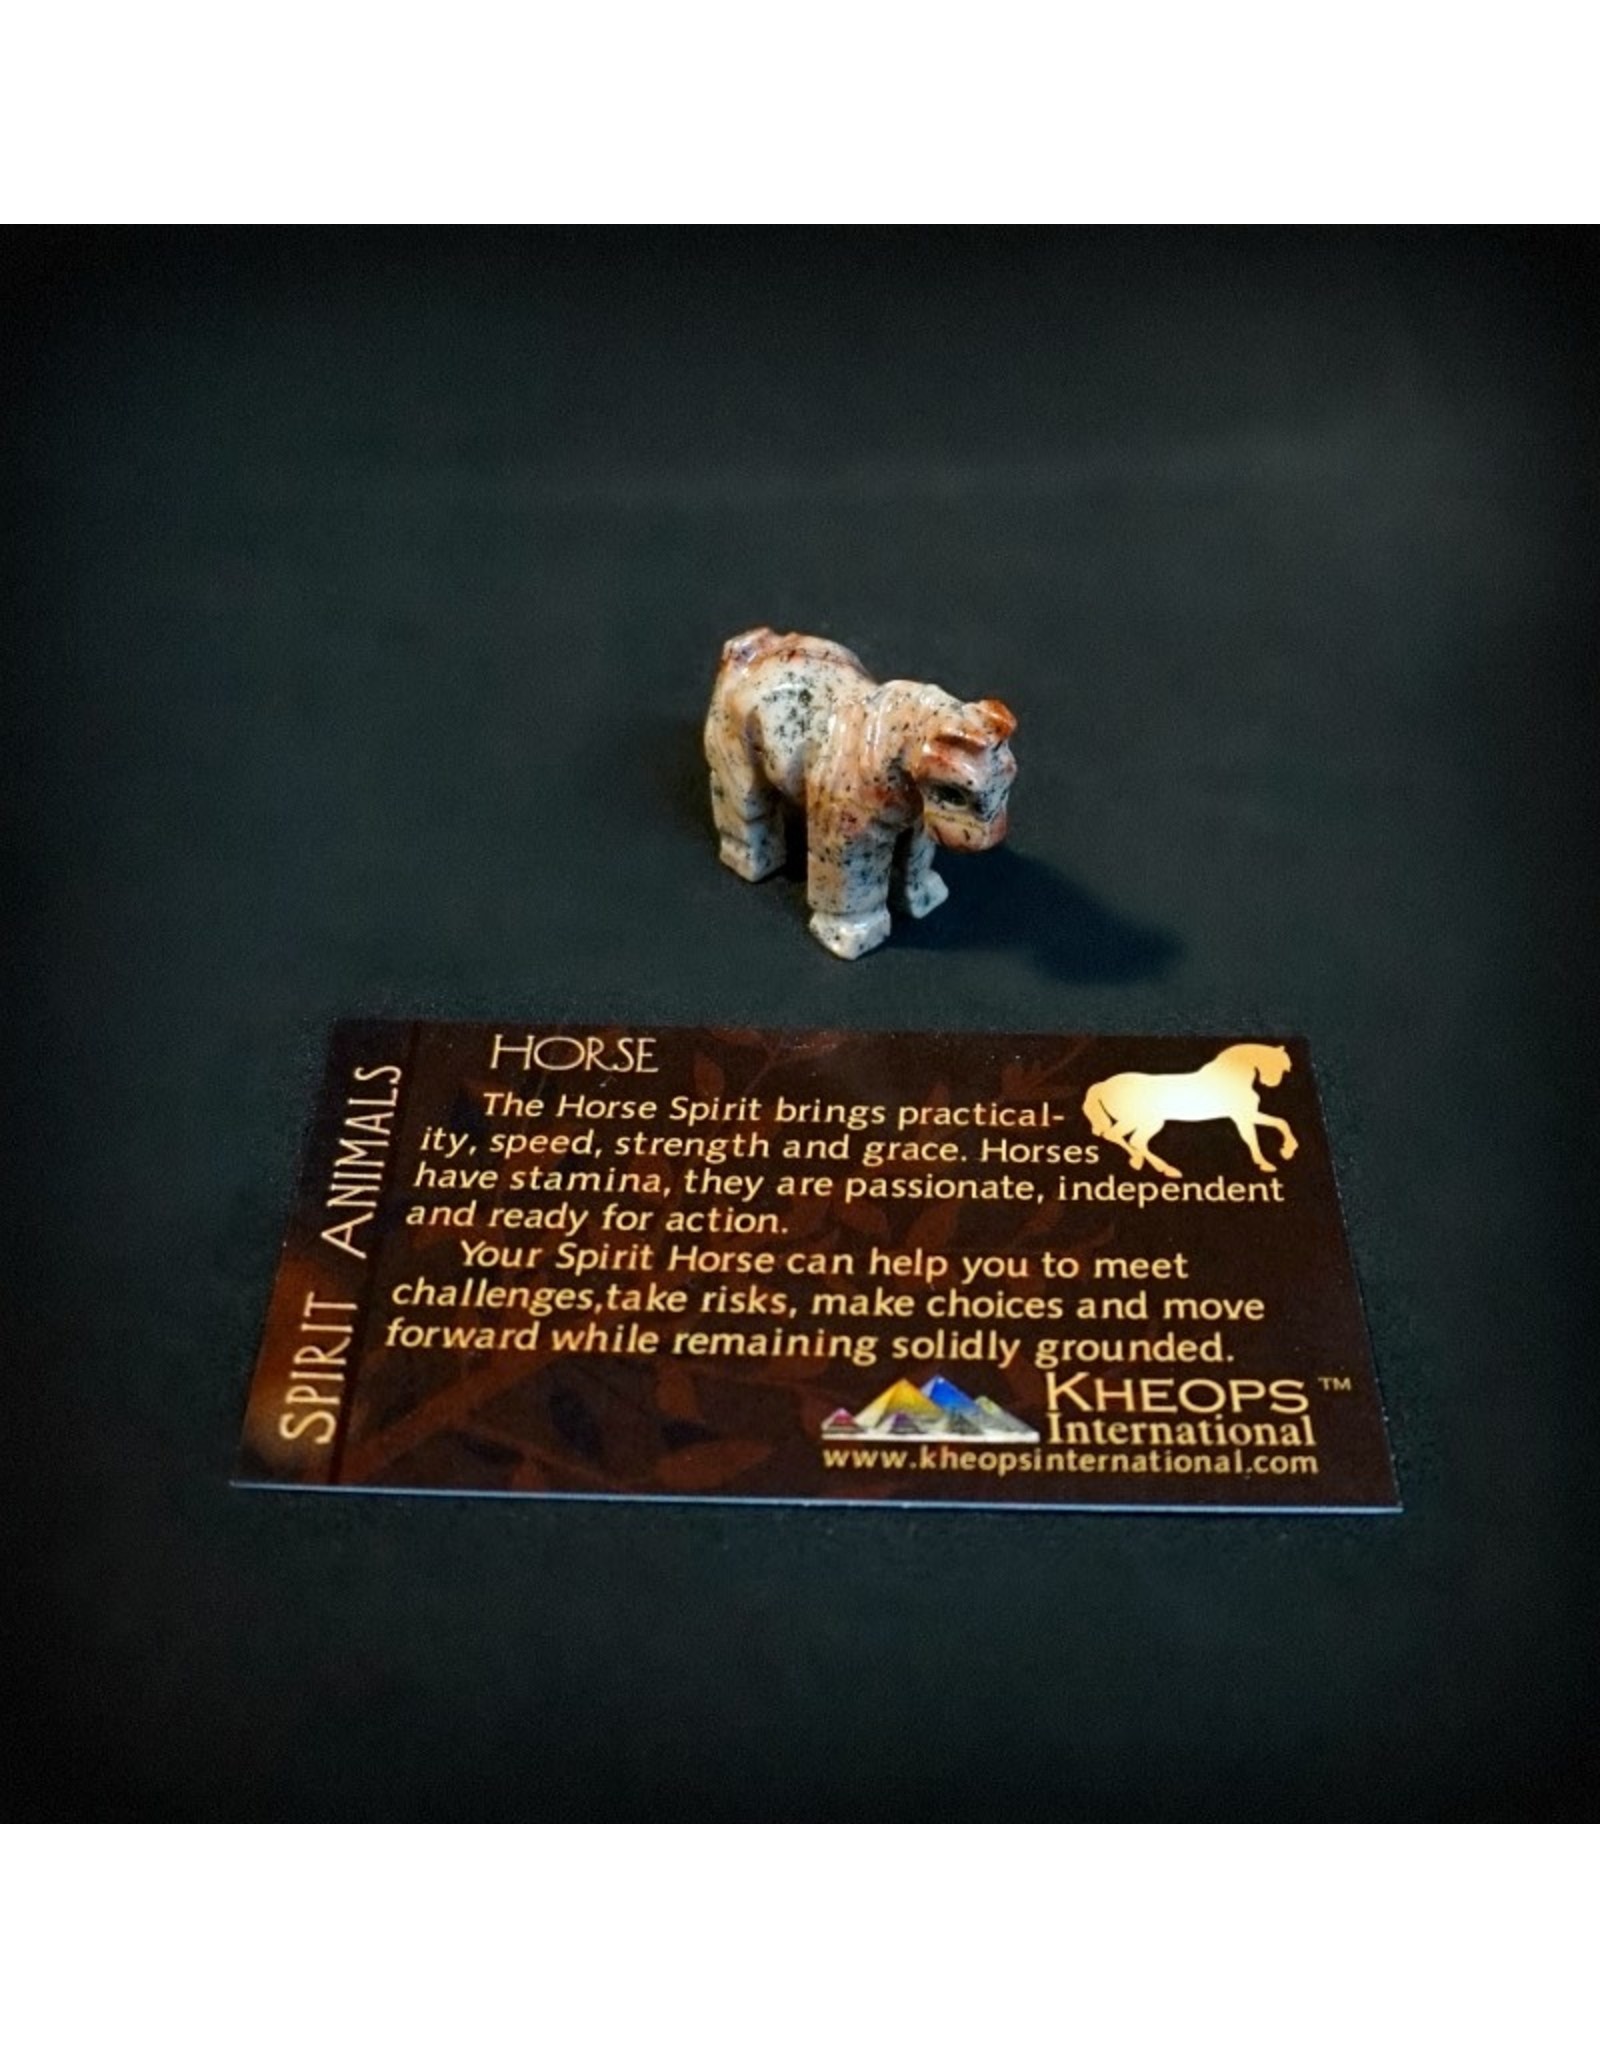 Spirit Animal Carved Stone Mini ÃƒÆ’Ã‚Â¢ÃƒÂ¢Ã¢â‚¬Å¡Ã‚Â¬ÃƒÂ¢Ã¢â€šÂ¬Ã…â€œ Horse